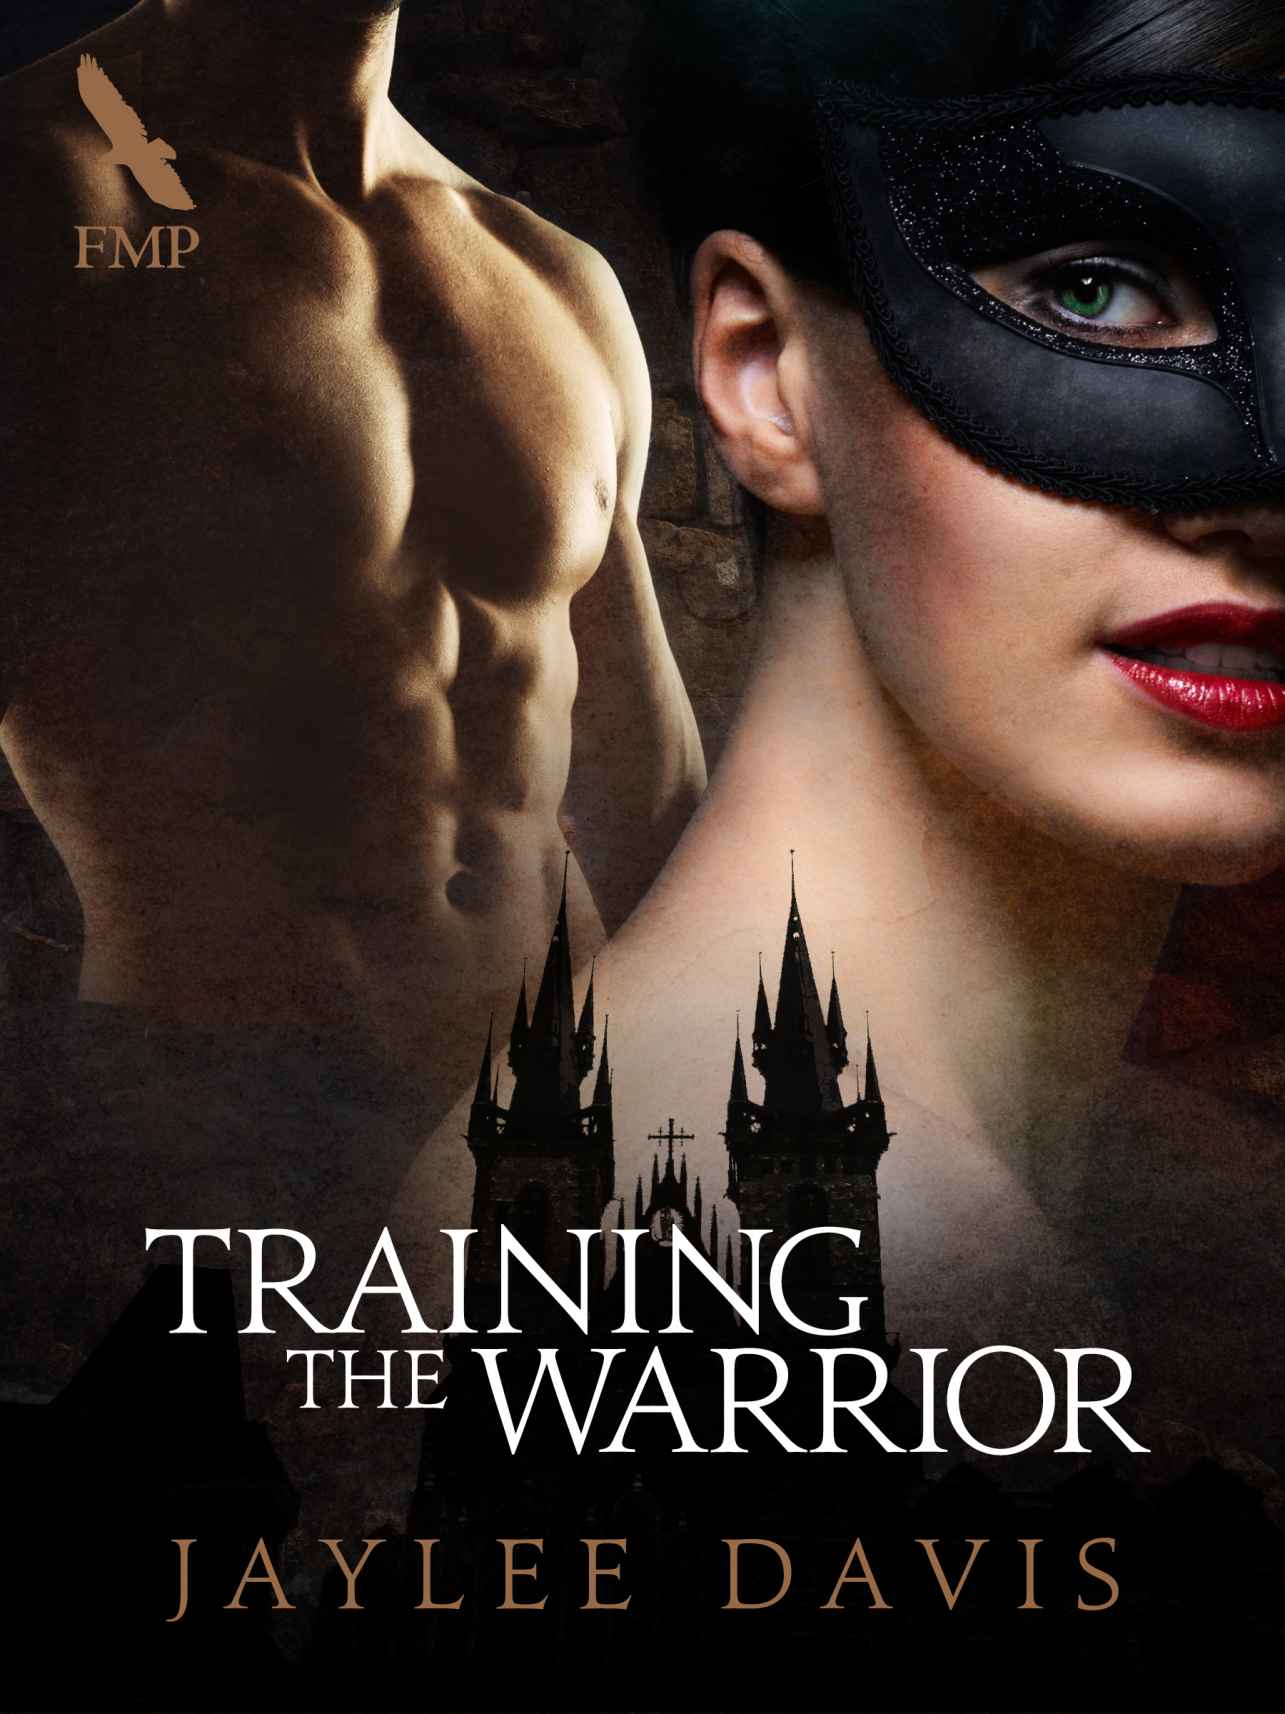 Training the Warrior by Jaylee Davis